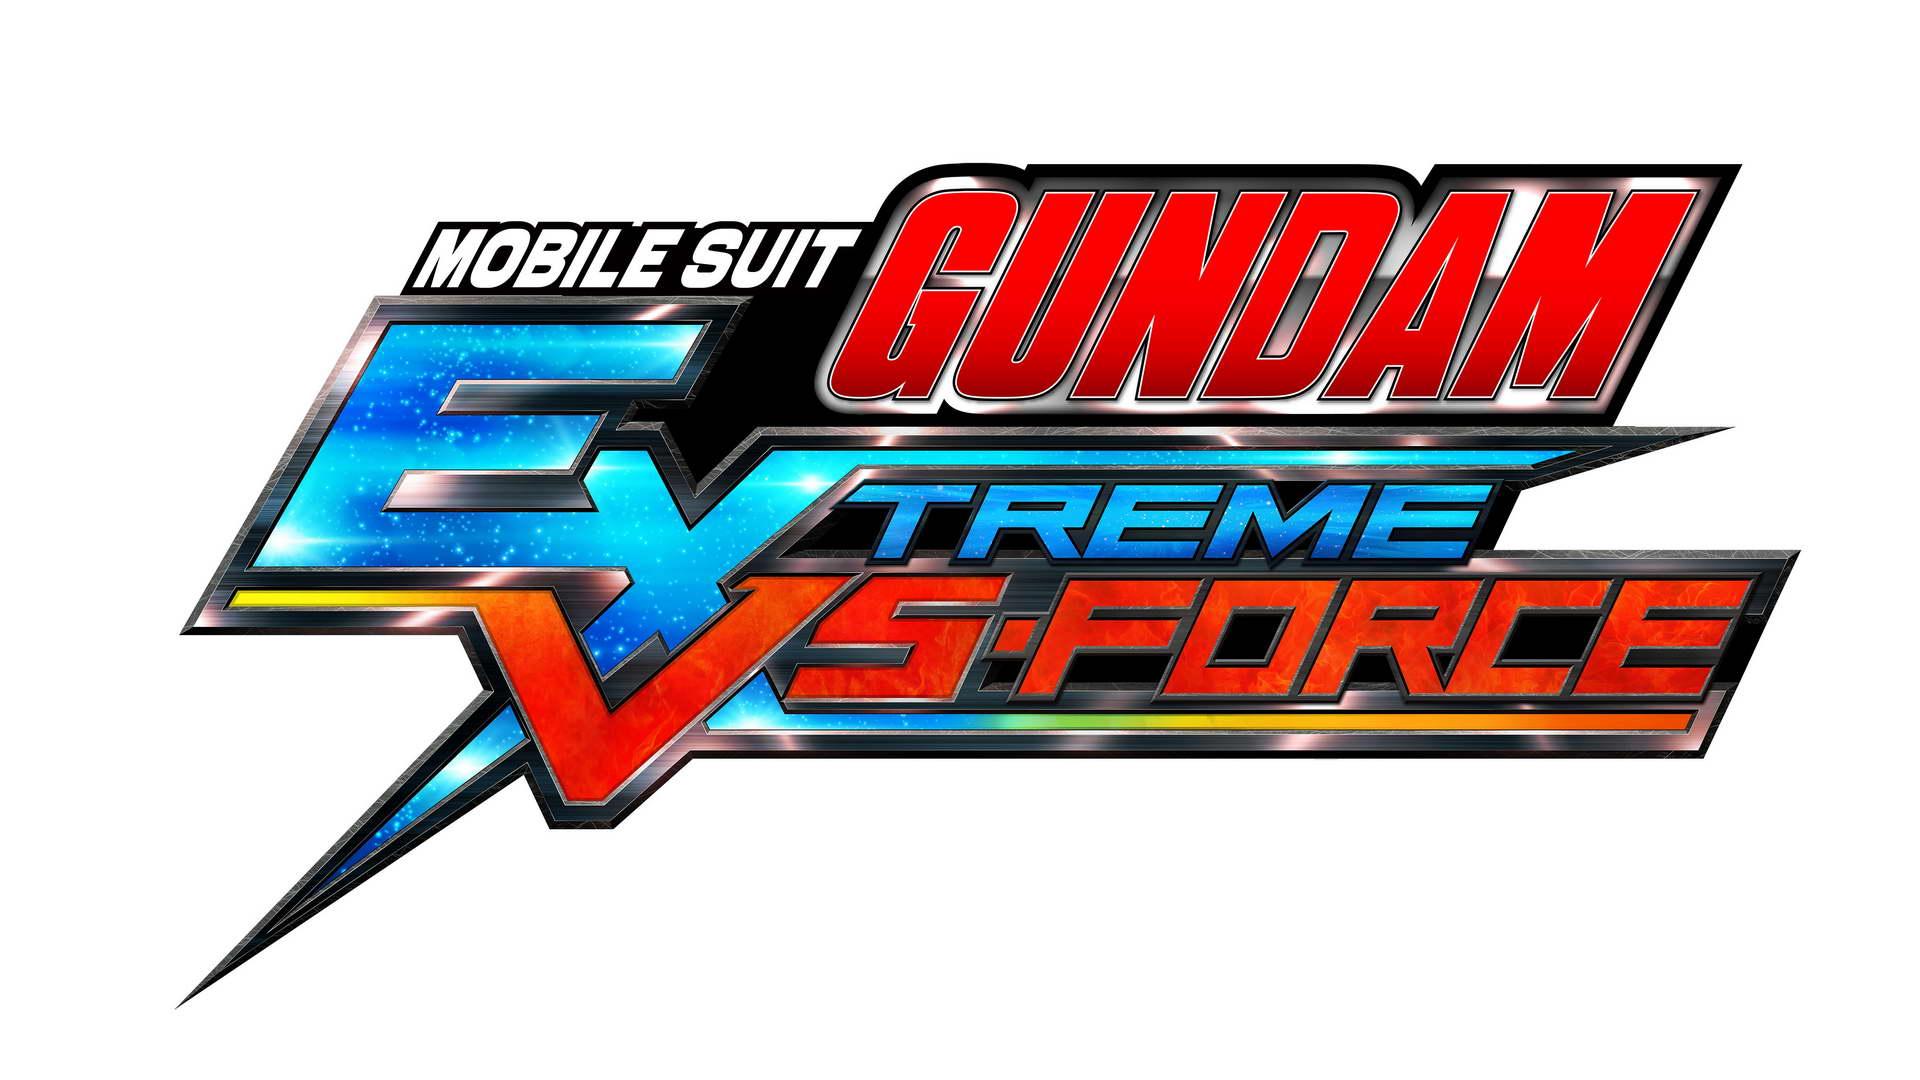 GameStart 2015: MOBILE SUIT GUNDAM EXTREME VS-FORCE công bố thông tin mới